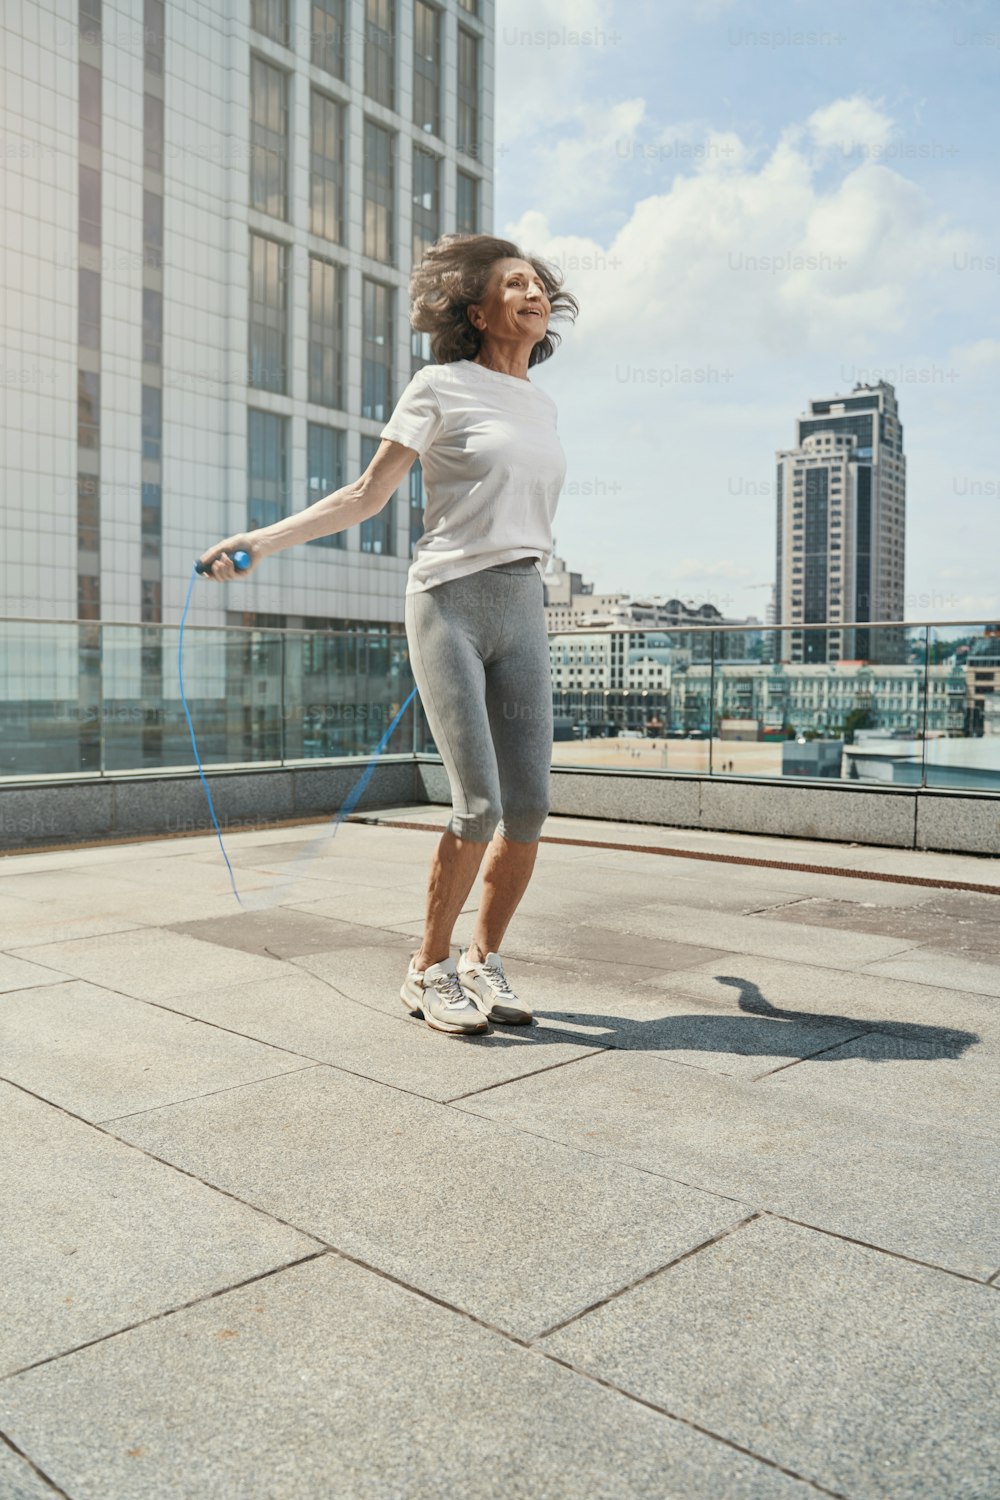 Fröhliche sportliche Dame verbringt aktive Zeit mit Springseil auf offener Terrasse über der Stadt